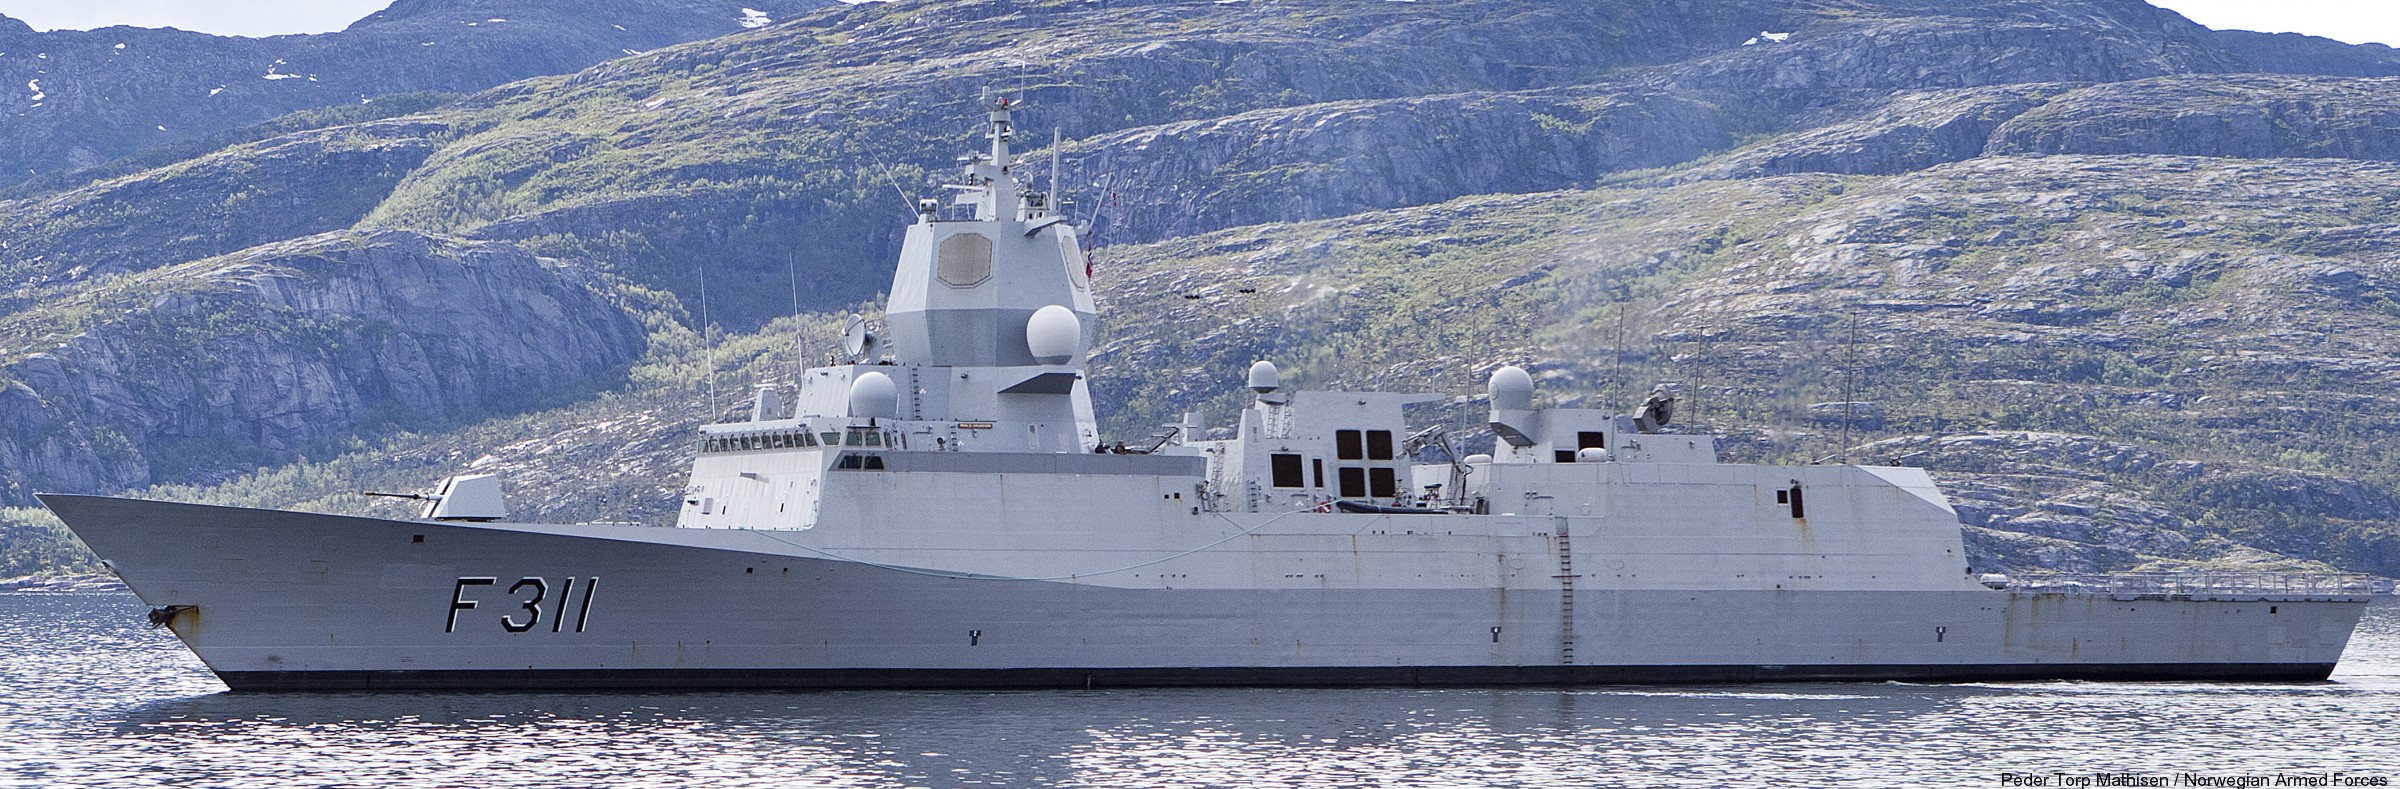 f-311 hnoms roald amundsen knm nansen class frigate royal norwegian navy sjoforsvaret 64